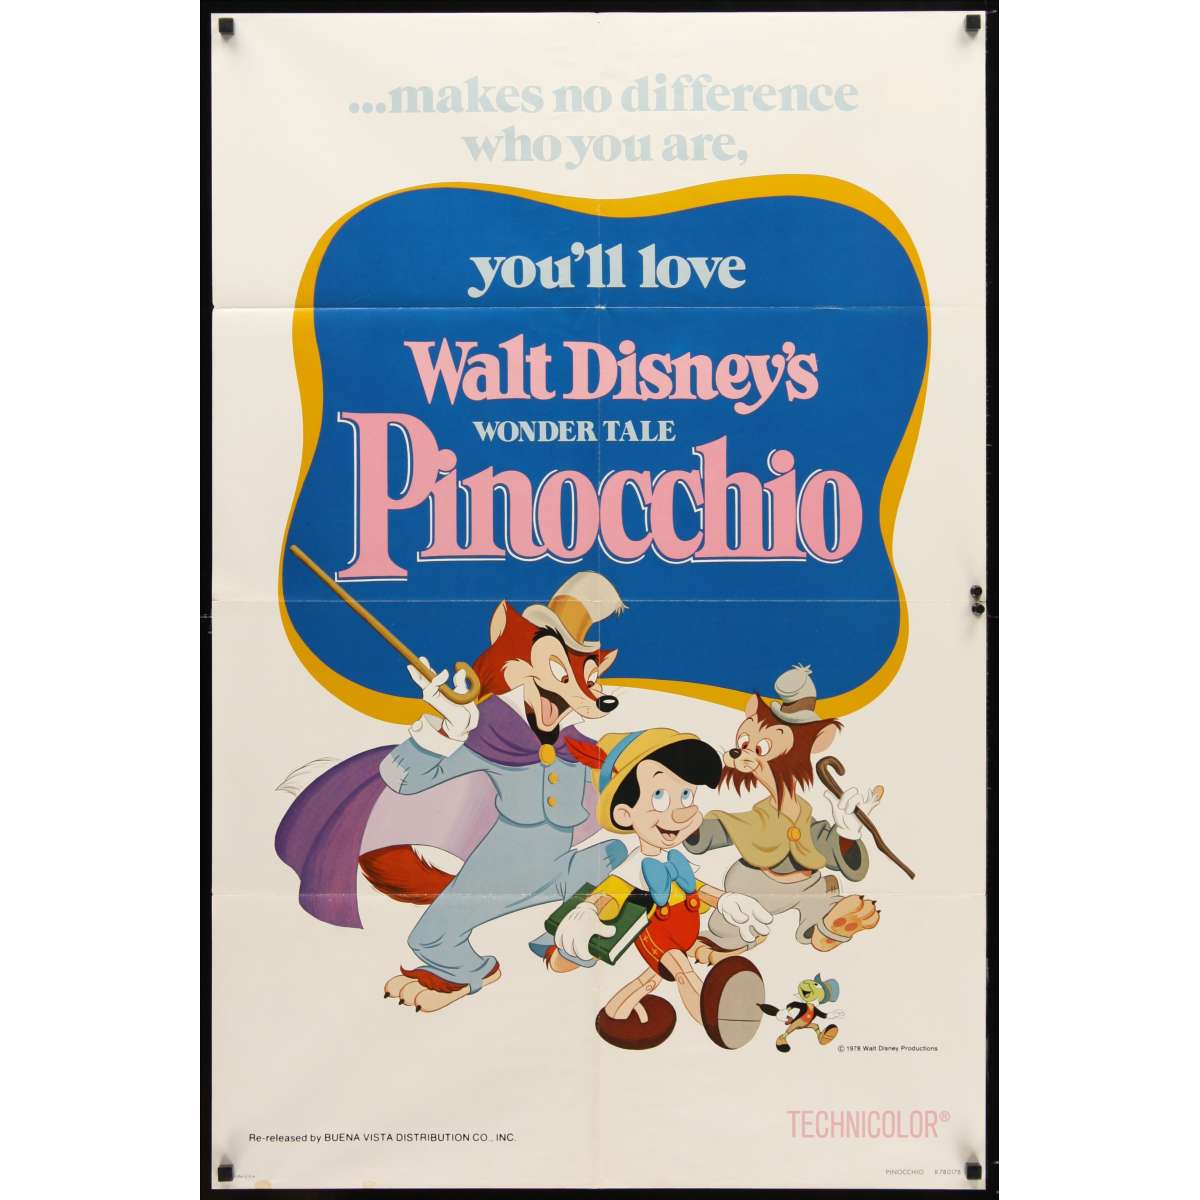 PINOCCHIO Original Movie Poster - US 27x40 in. - 1940/R1978 - Disney classic